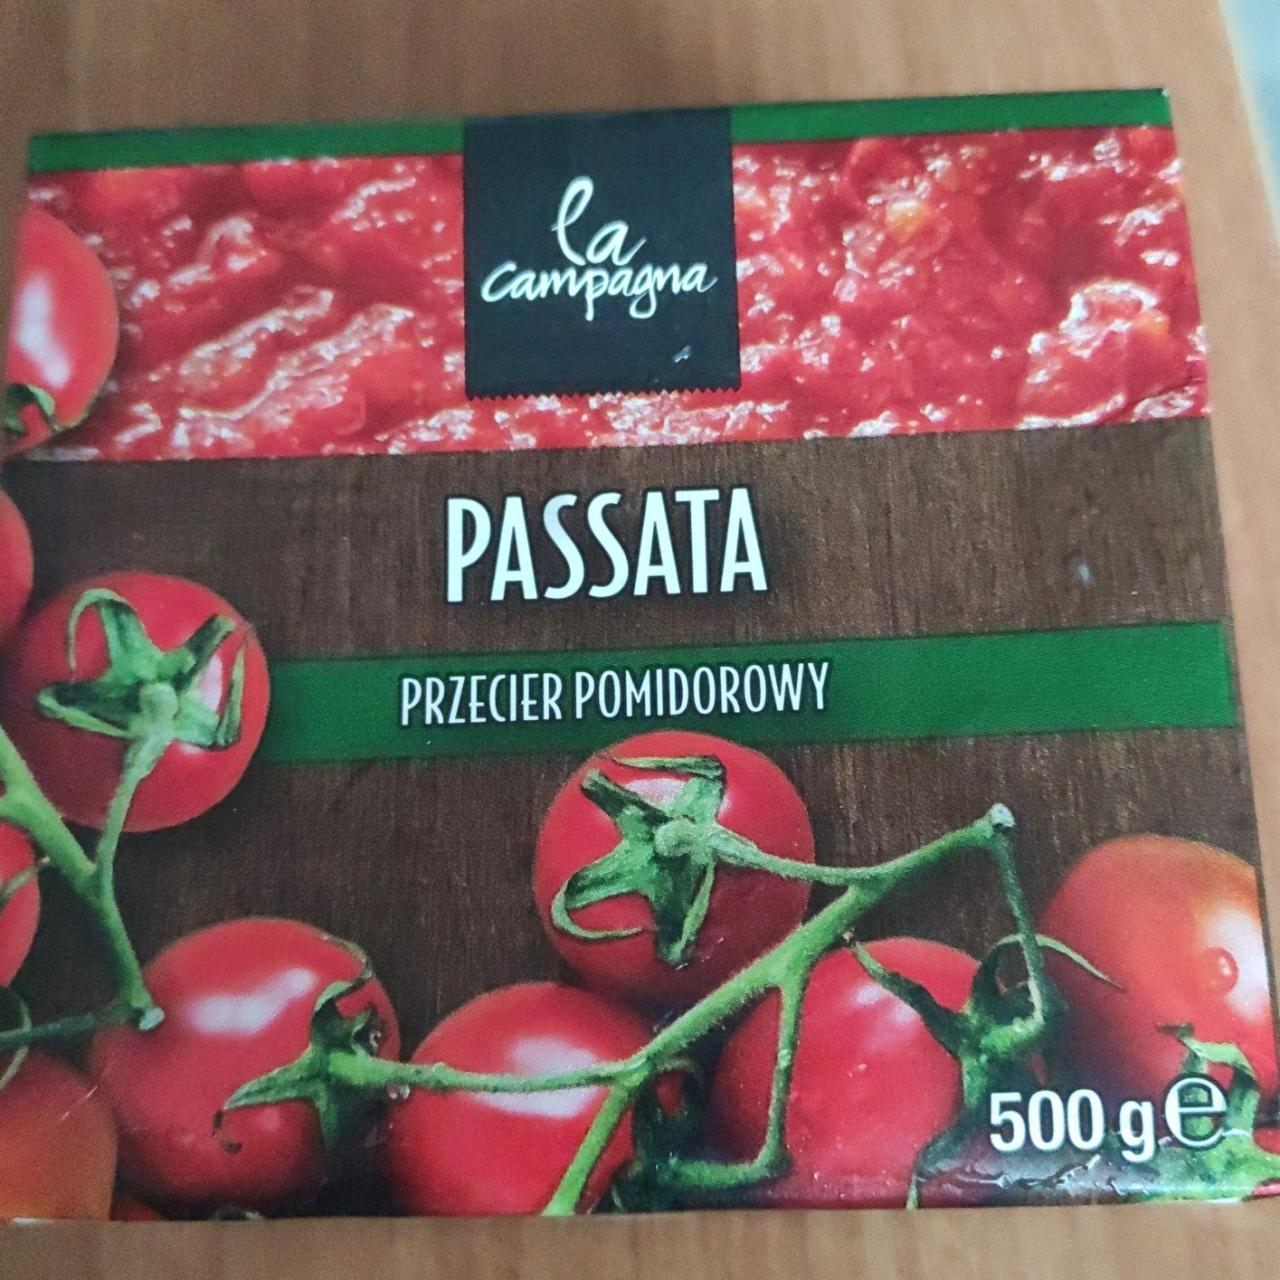 Zdjęcia - Passata Przecier Pomidorowy La Campagna